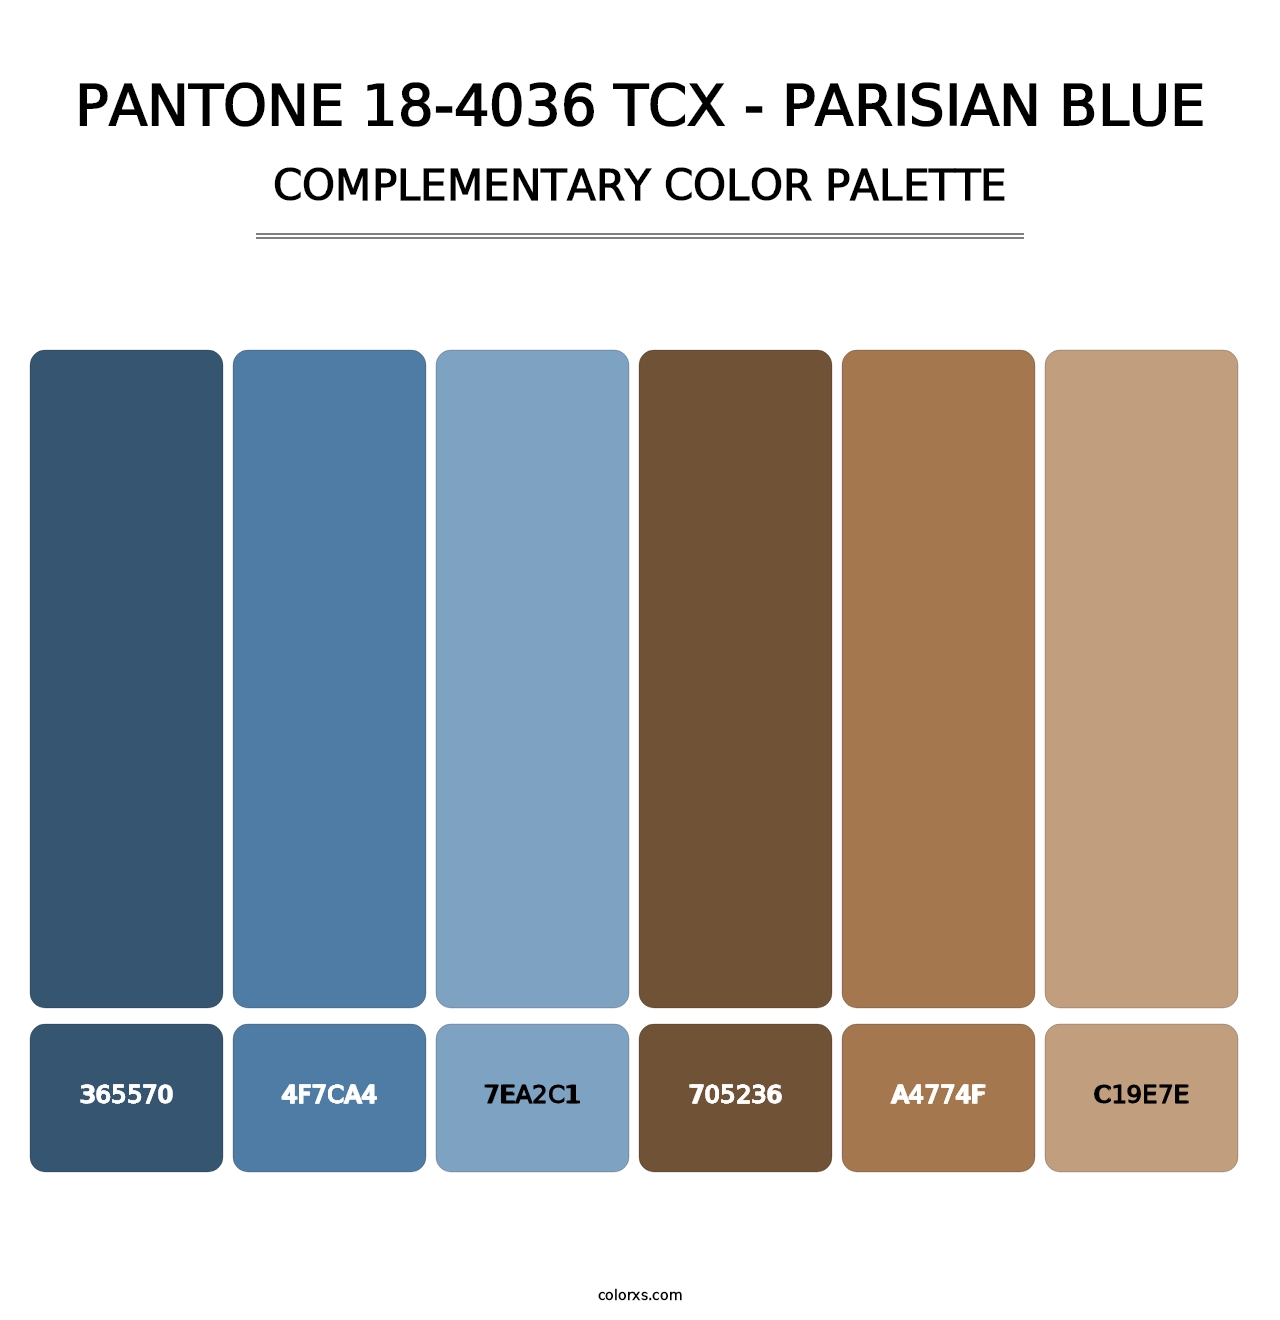 PANTONE 18-4036 TCX - Parisian Blue - Complementary Color Palette